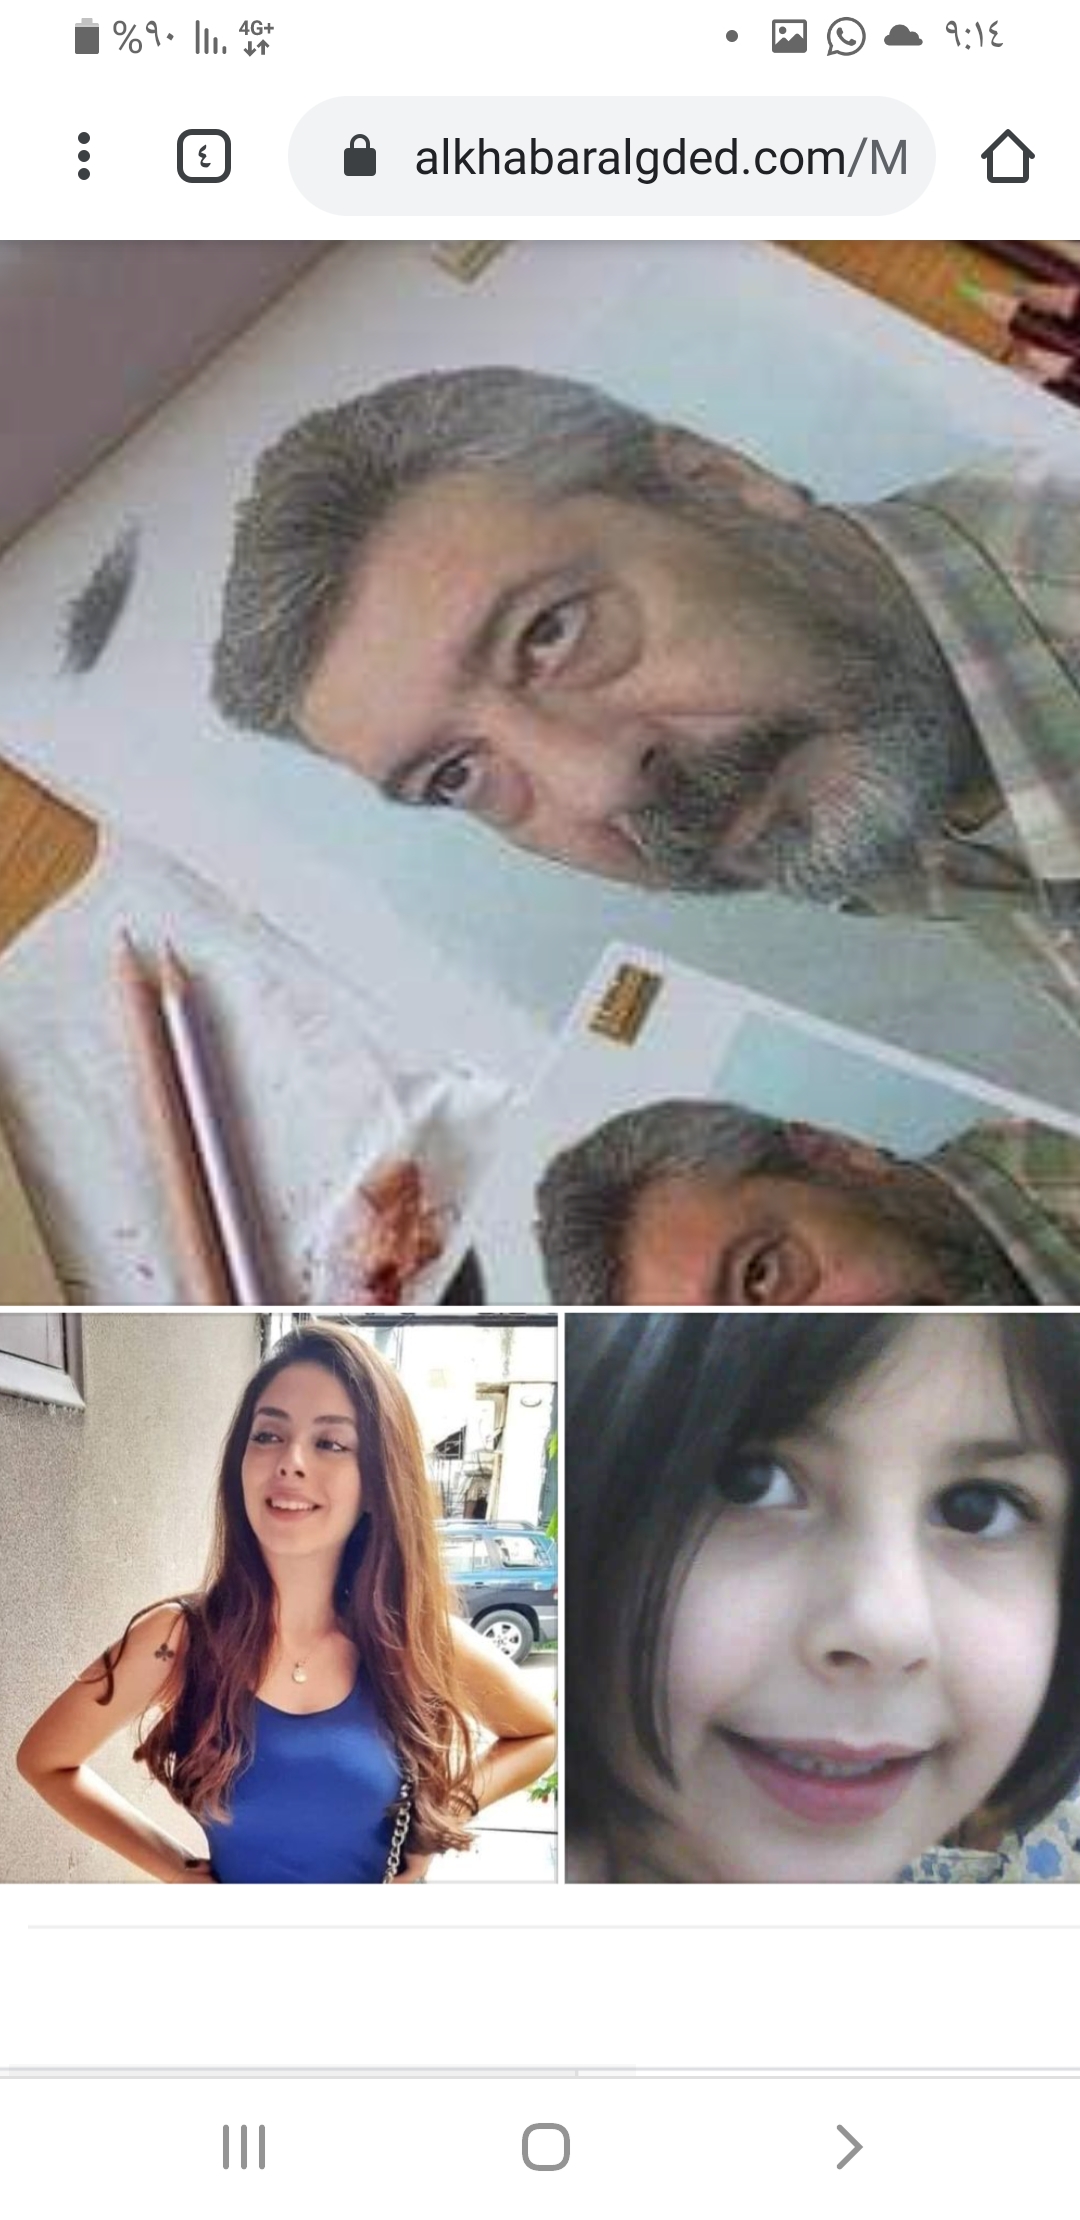    فاجعة تهز سوريا... أستاذ يقتل بناته وينتحر بعد نشره سبب ذلك بموقع 《فيسبوك》.. صور